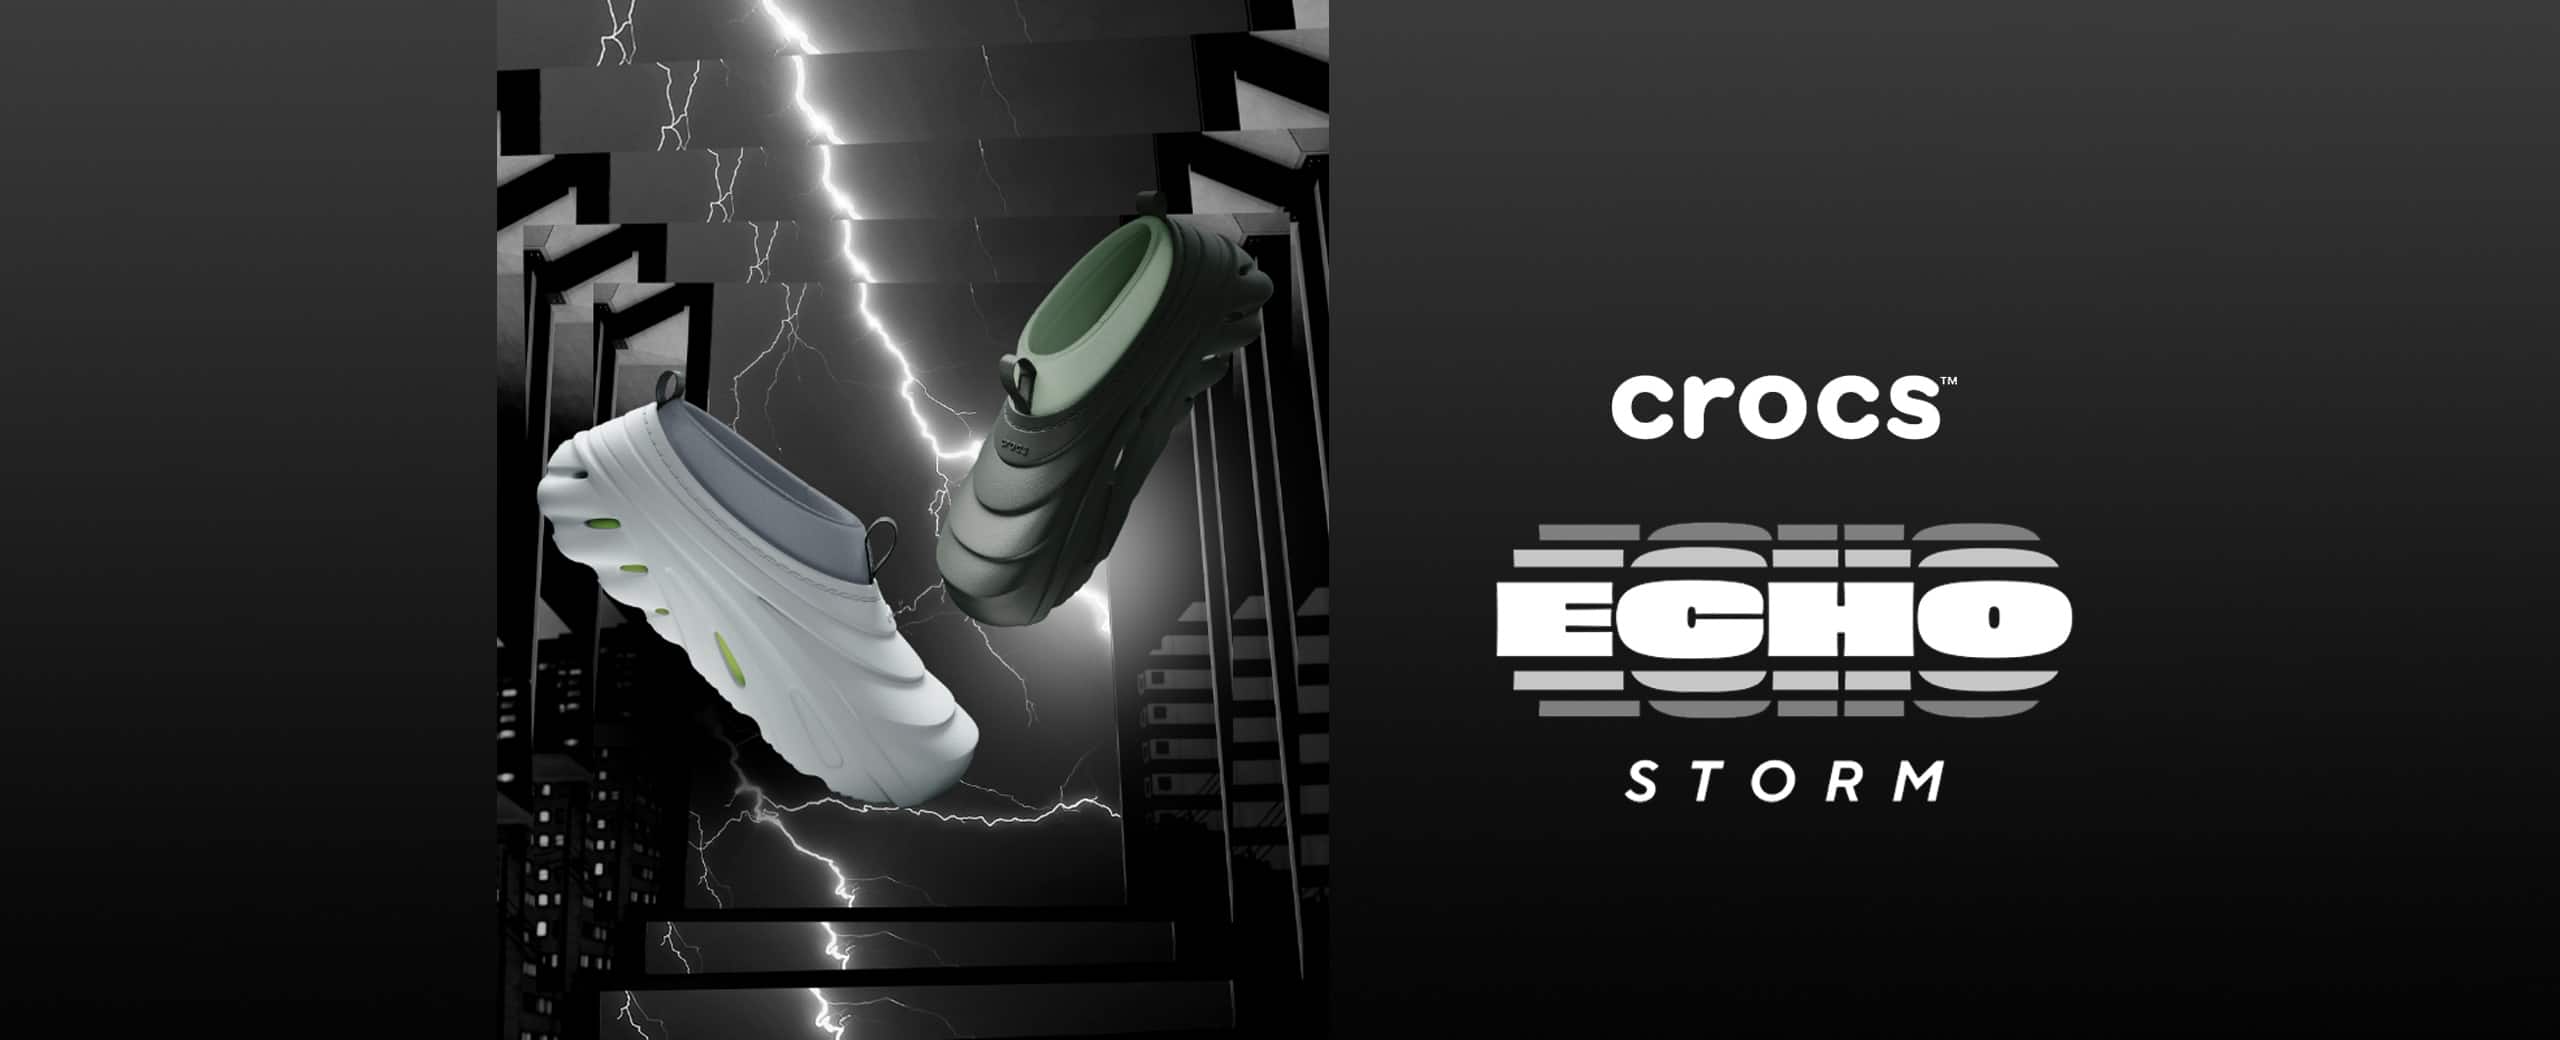 "crocs Echo Storm"